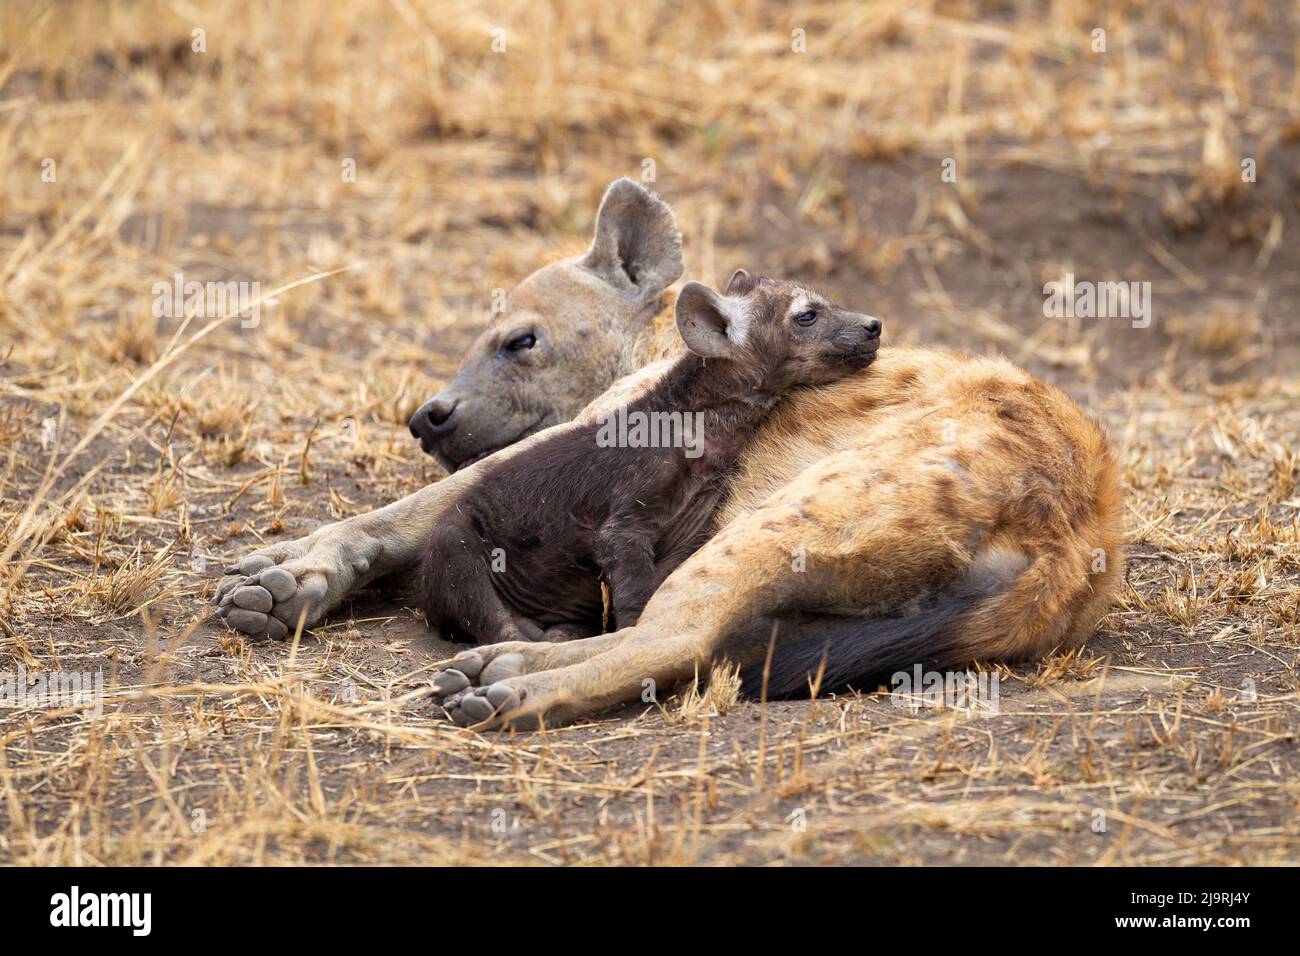 Afrika, Tansania. Ein Hyäne-Welpen schmiegt sich an einen Erwachsenen. Stockfoto